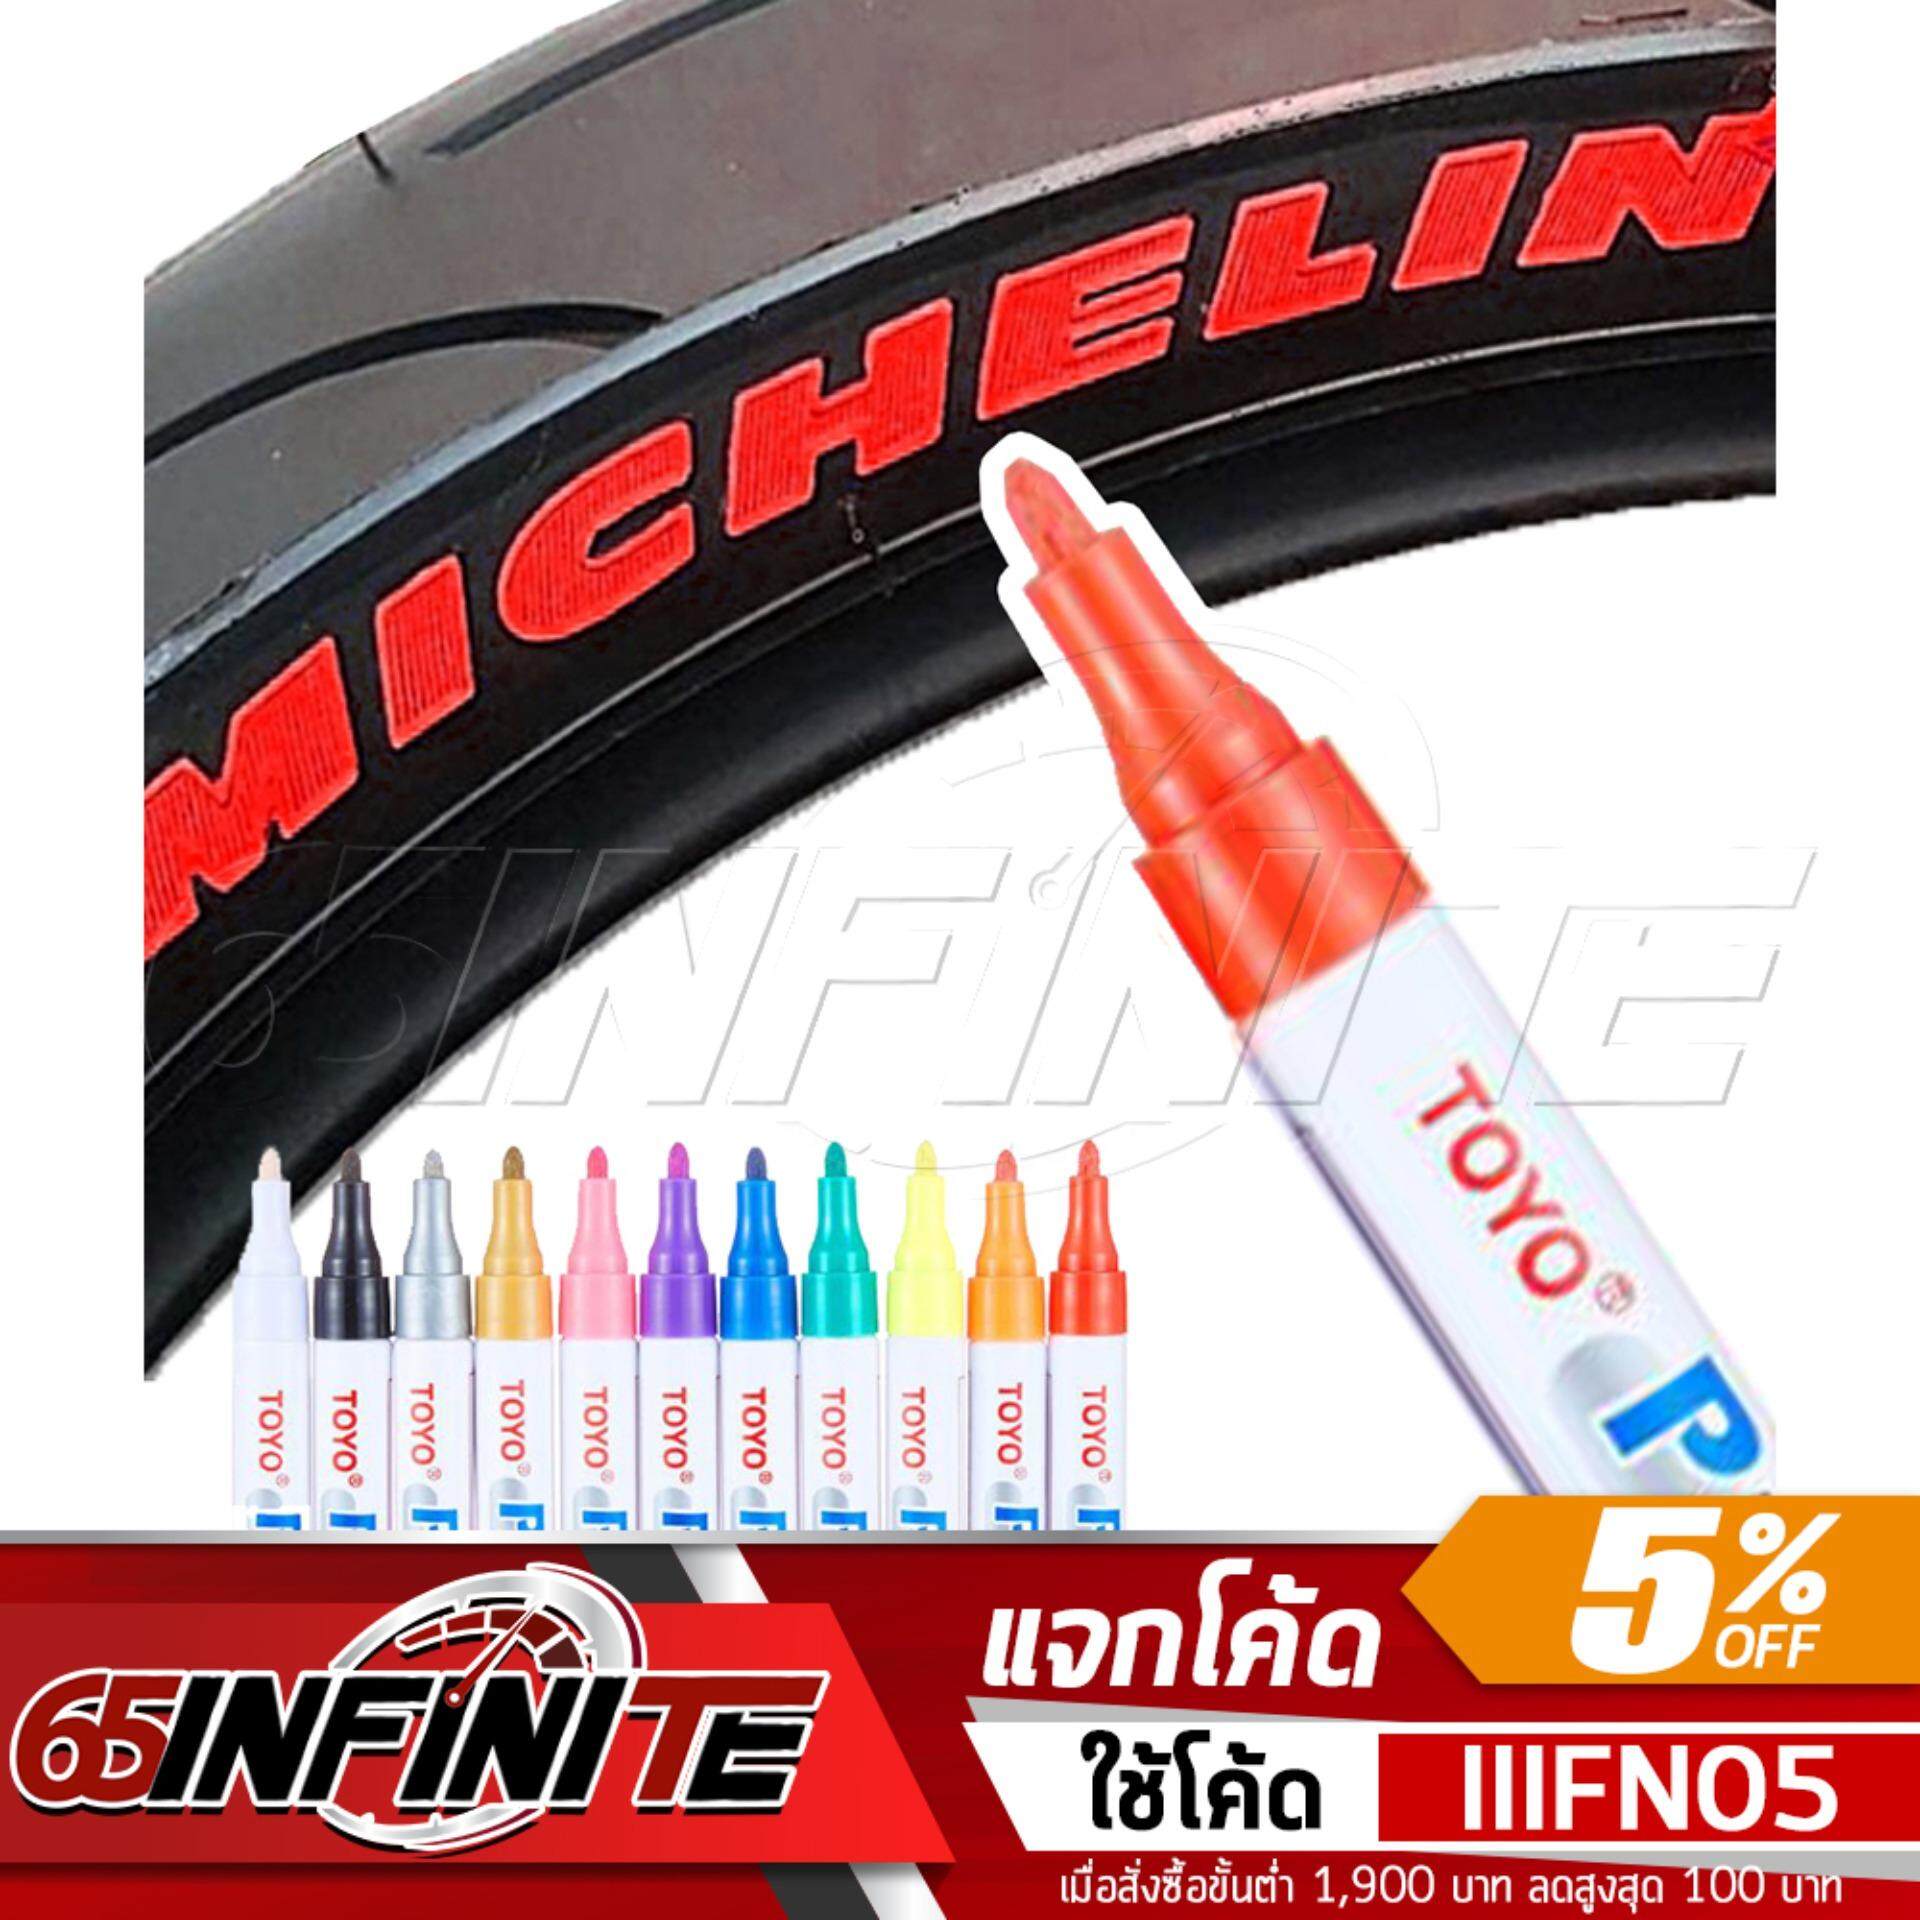 65Infinte TOYO Paint (สีแดง) ปากกาเขียนยาง ปากกาเขียนล้อ แต้มแม็กซ์ ยางรถยนต์ ล้อรถยนต์ ของแท้จากญี่ปุ่น 100%